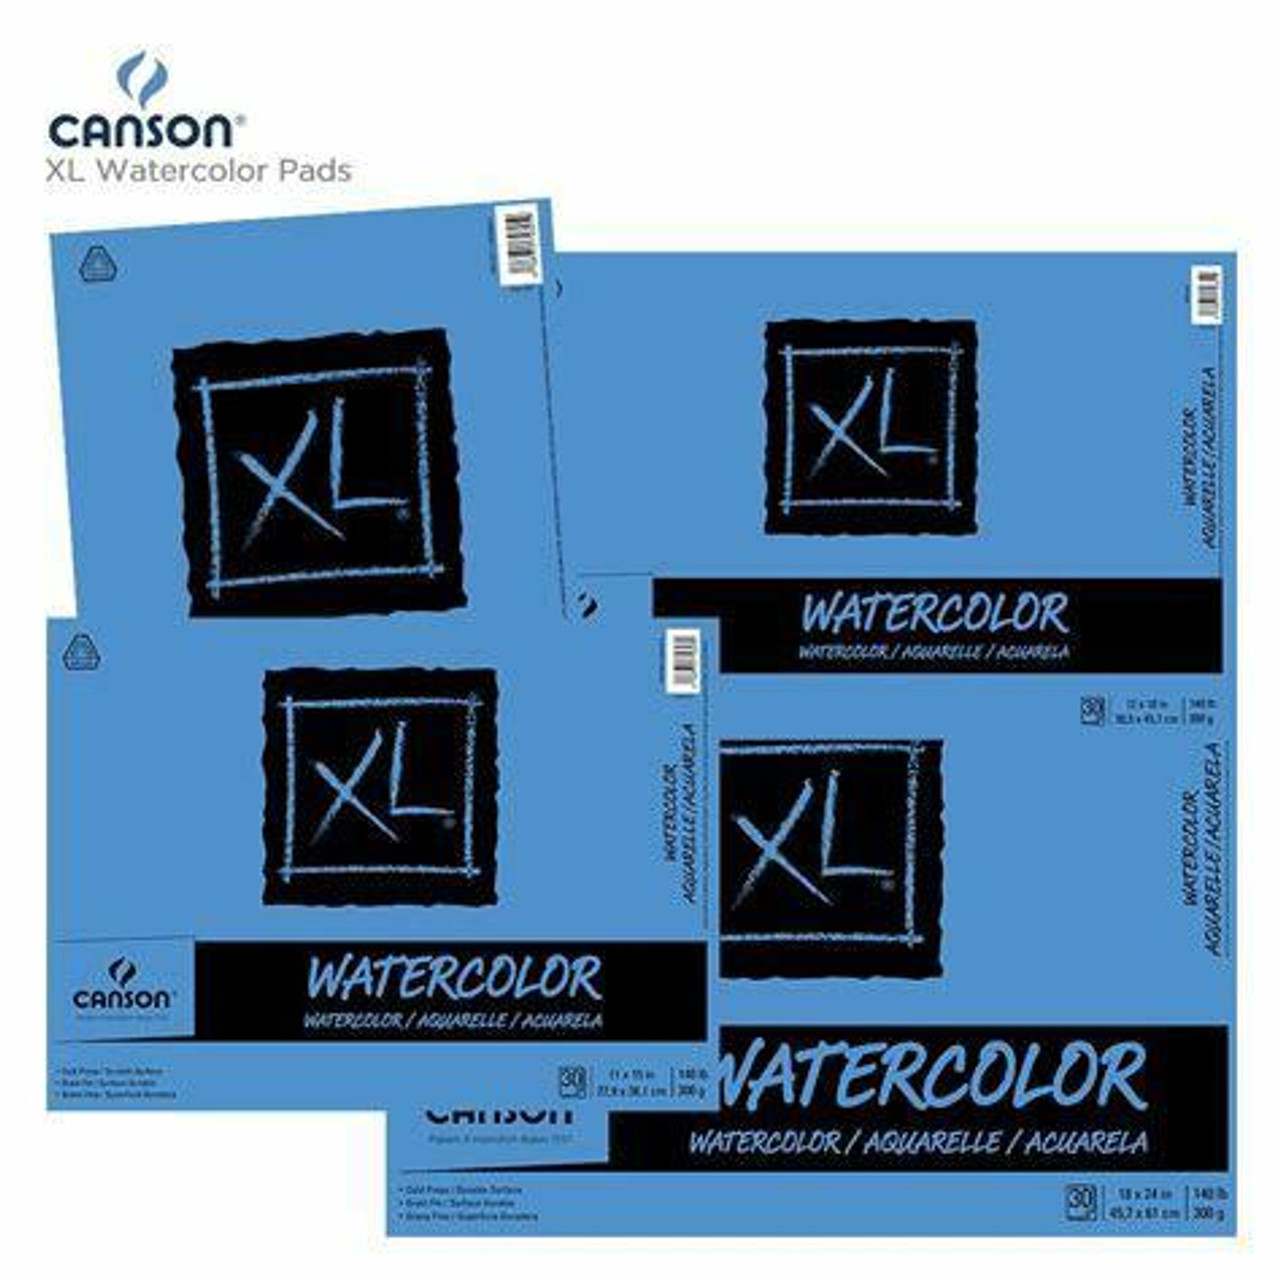 Canson XL Watercolor Pad, 30 Sheets, 9 x 12 (434027) - Sam Flax Atlanta